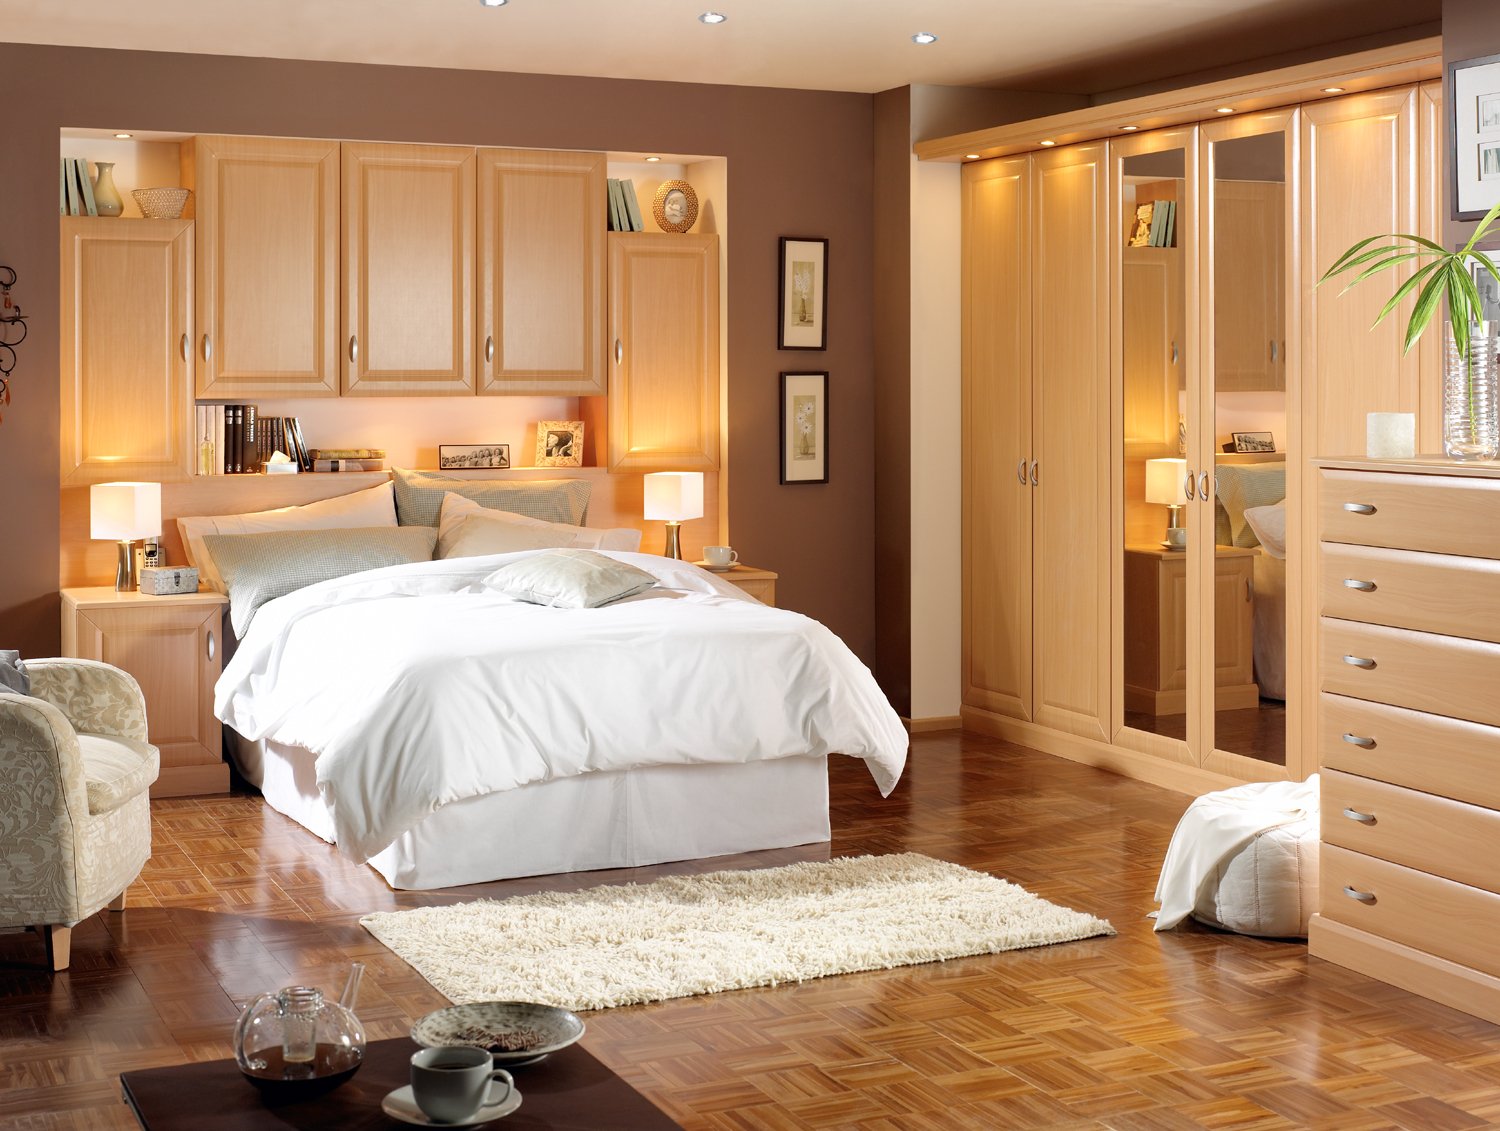 Outstanding Bedroom Design Ideas 1500 x 1131 · 259 kB · jpeg